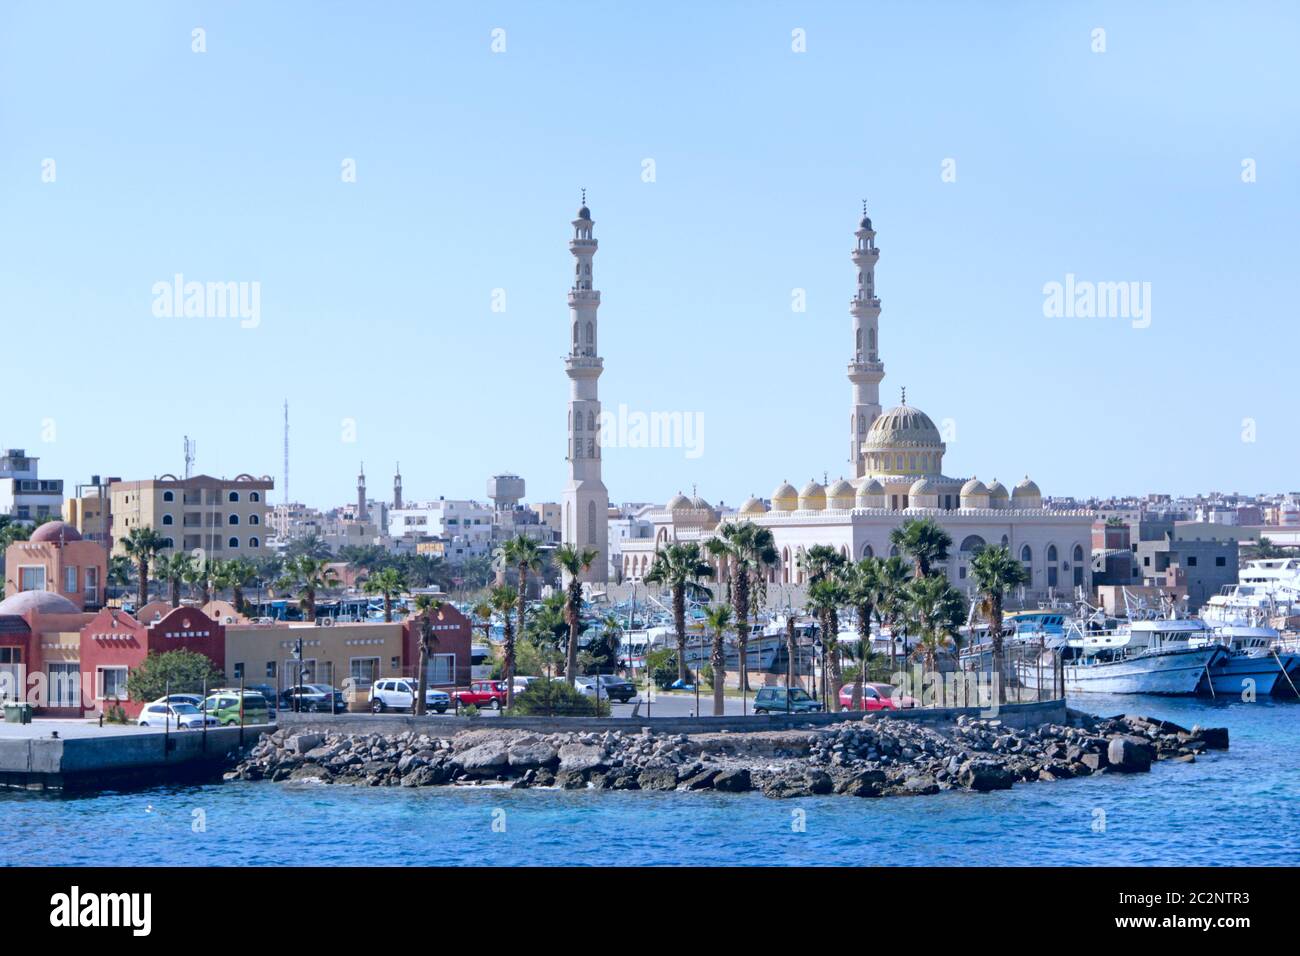 Vista de terraplén de Hurghada con barcos amarrados y hermosa mezquita. Moderna ciudad egipcia. Foto de stock